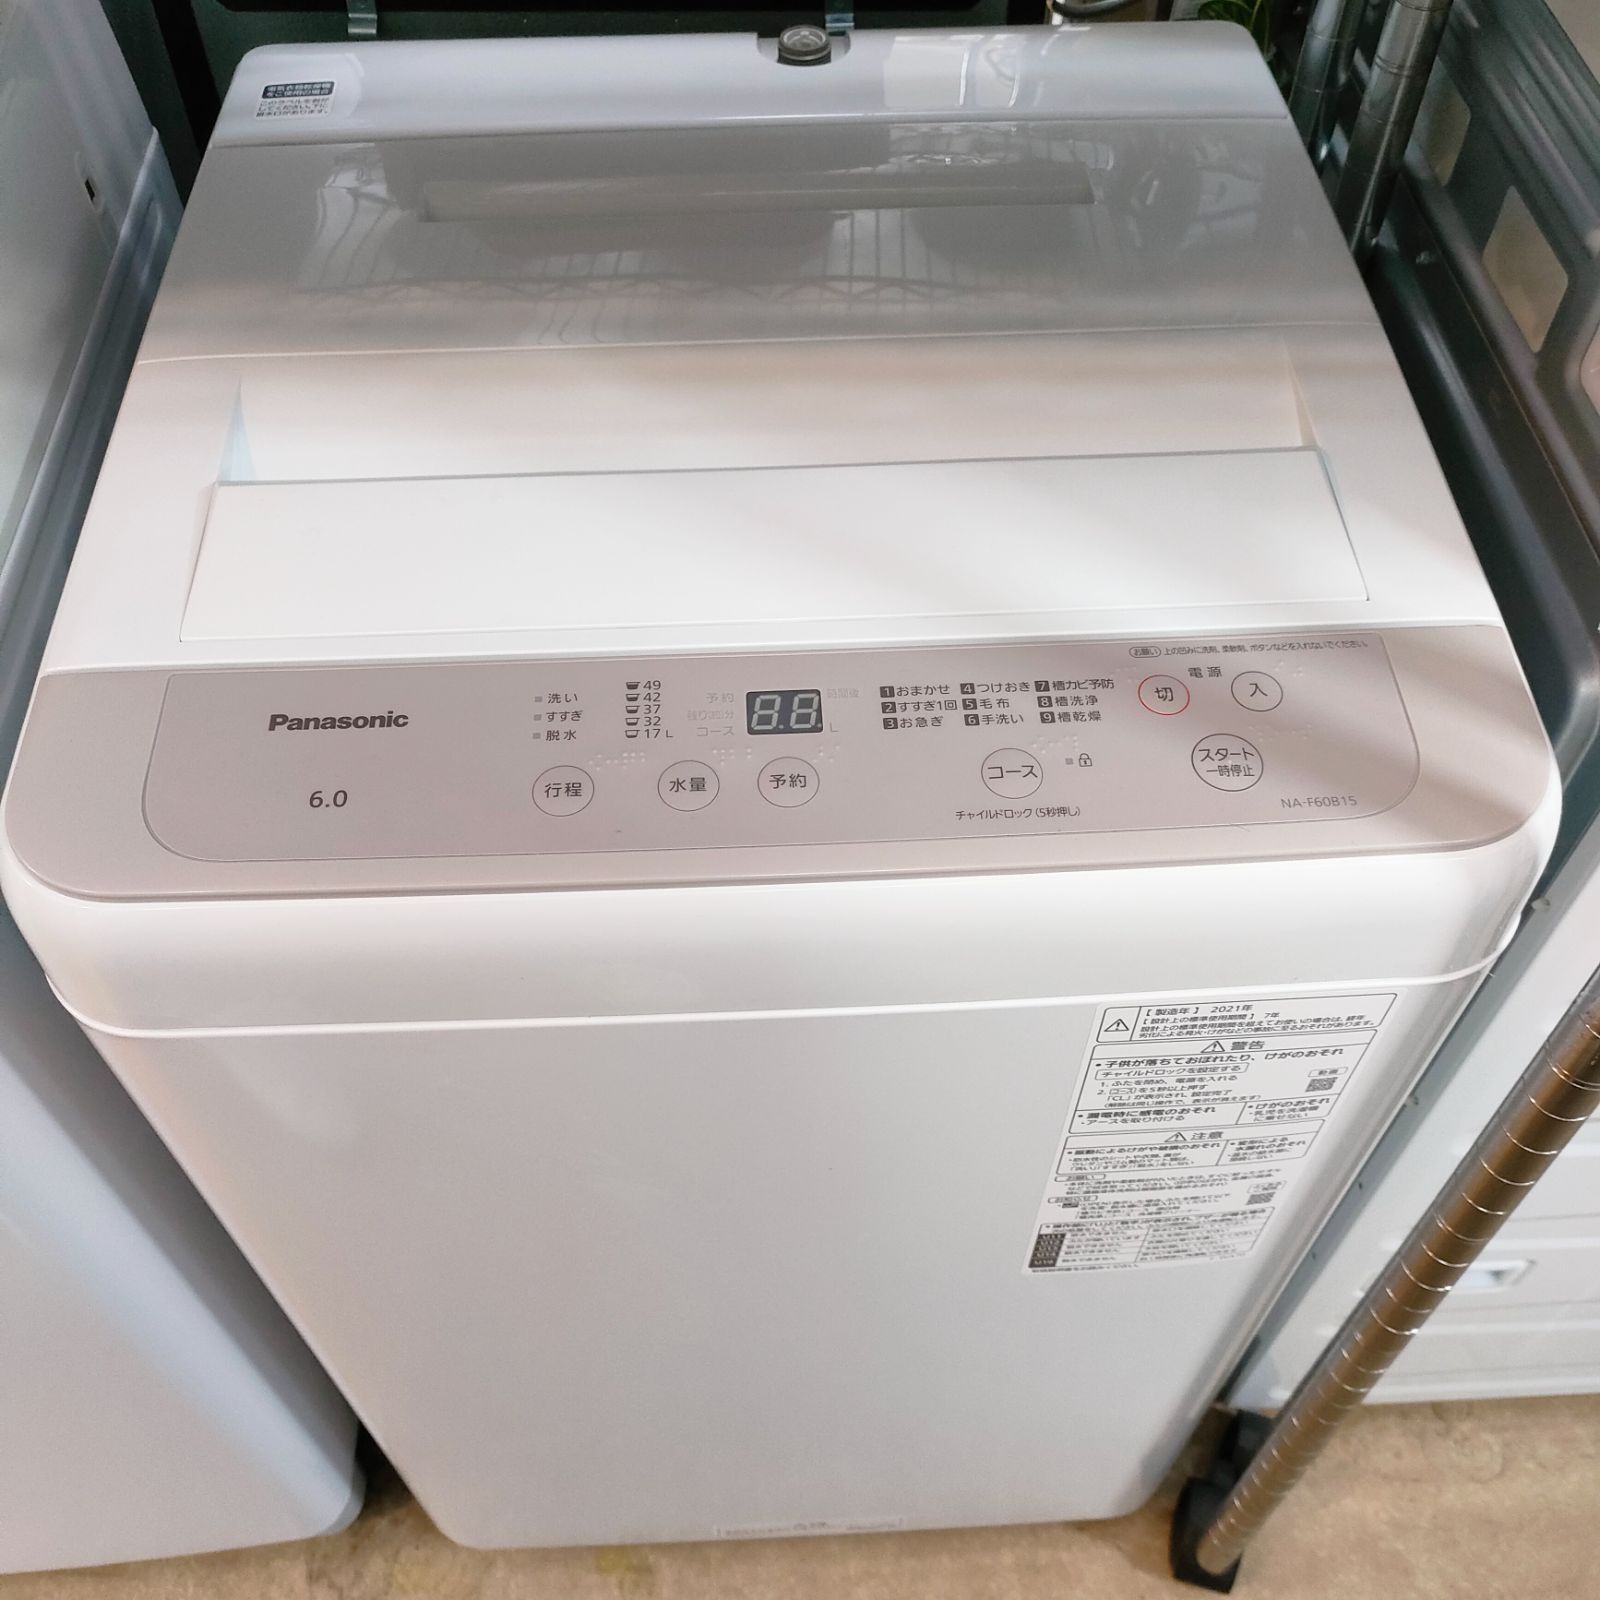 ◇ Panasonic 洗濯機 6.0kg 2021年製 NA-F60B15 - www.port-toamasina.com